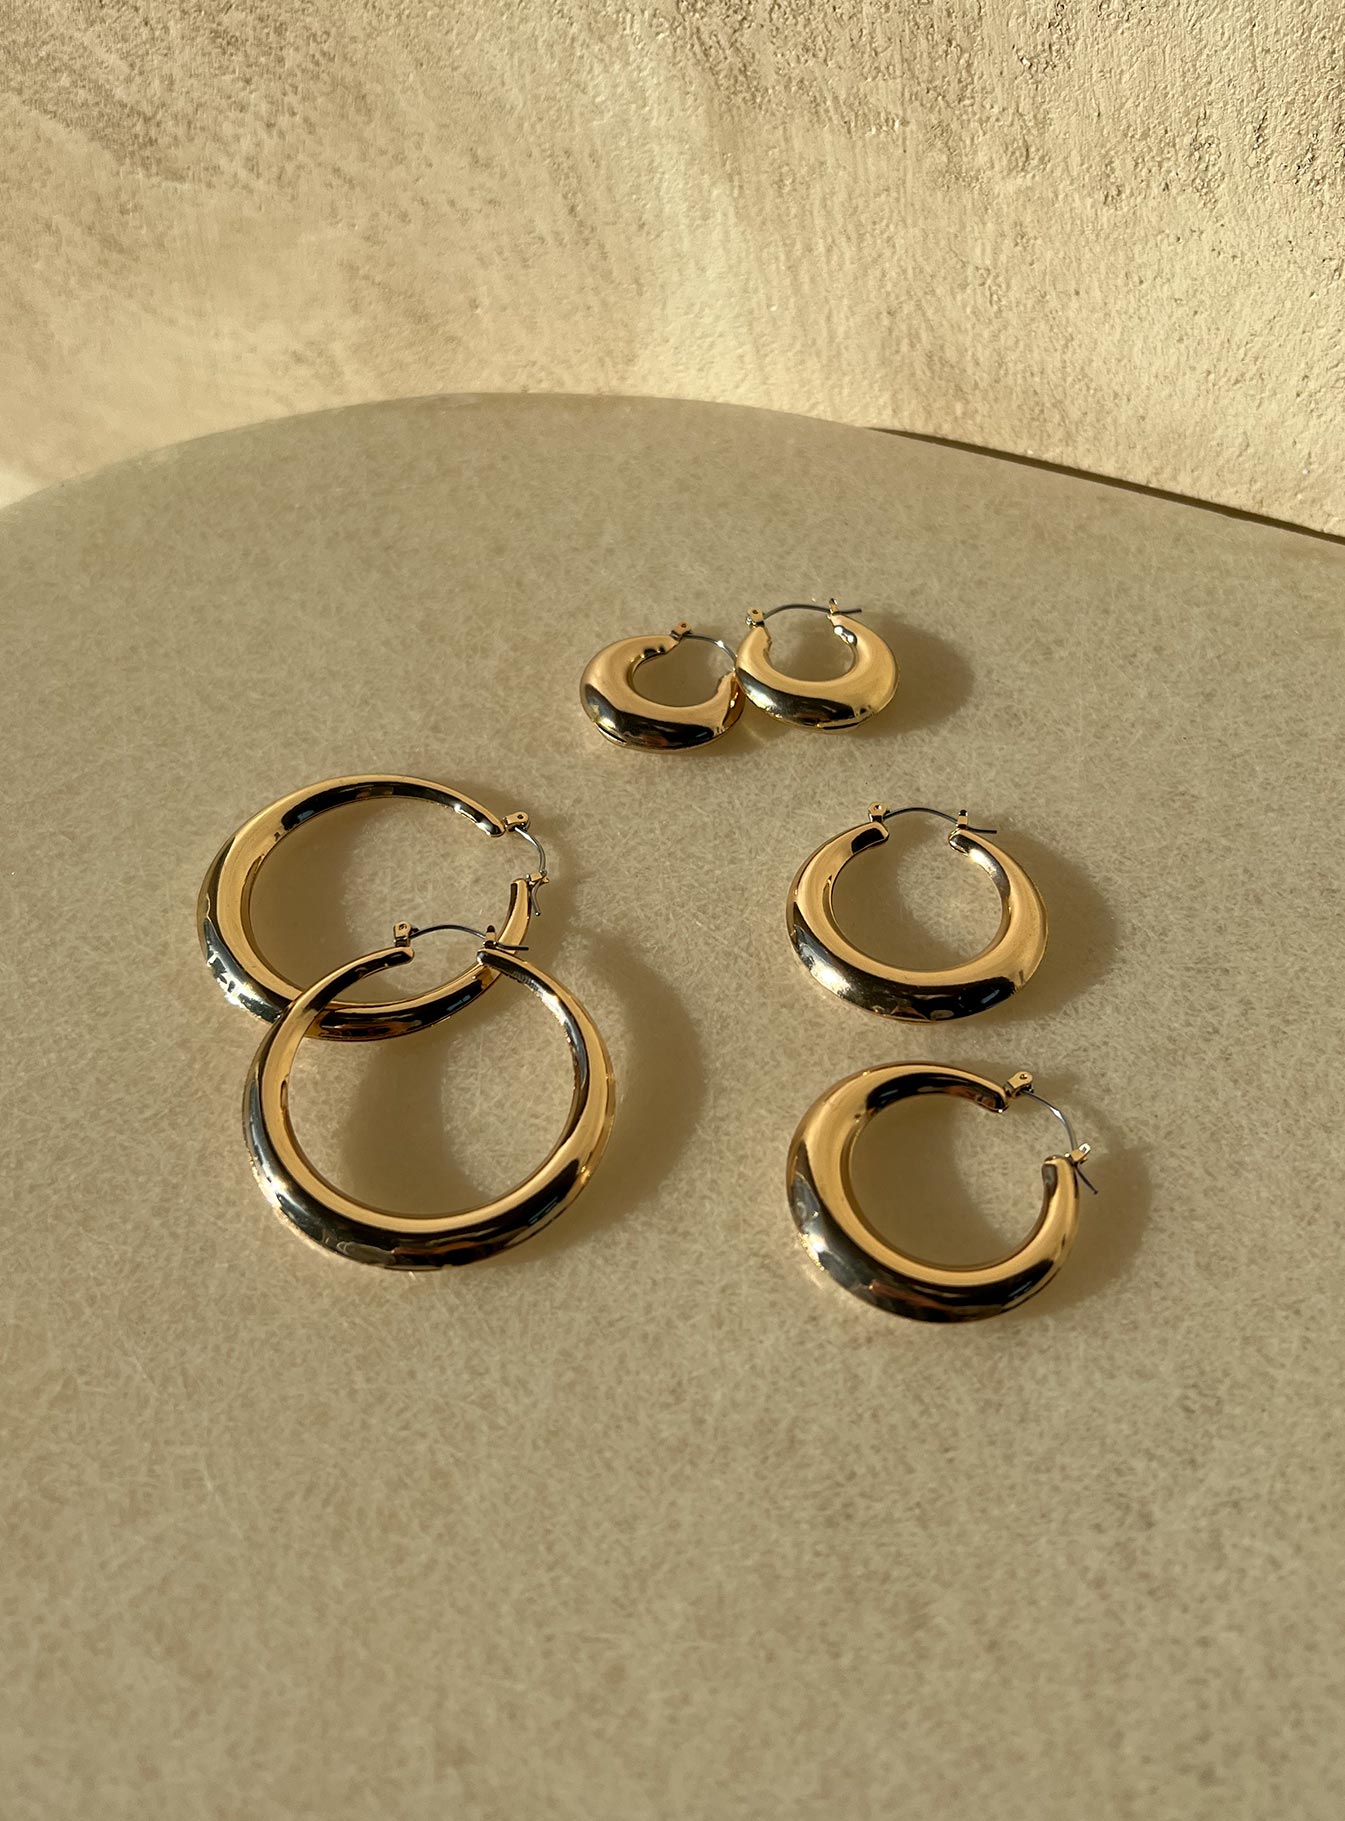 3 Hoop Earrings, Gold Earring Set, Gold Hoop Set - Etsy